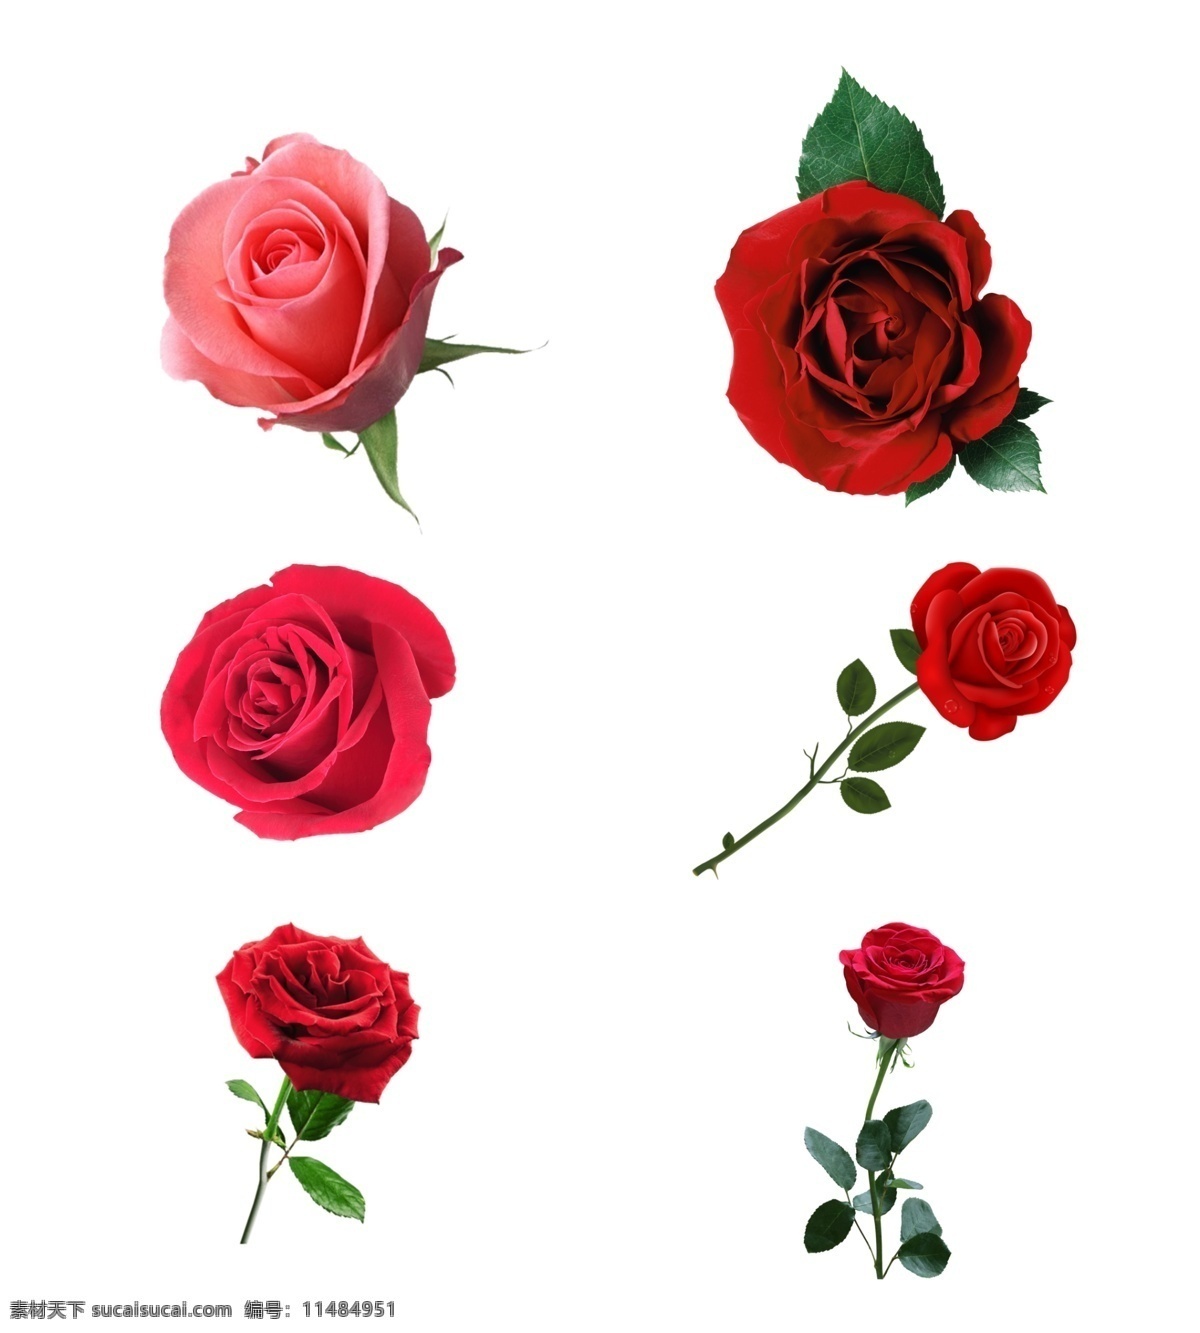 玫瑰花图片 玫瑰花 玫瑰花素材 水彩玫瑰 玫瑰花朵 玫瑰 玫瑰素材